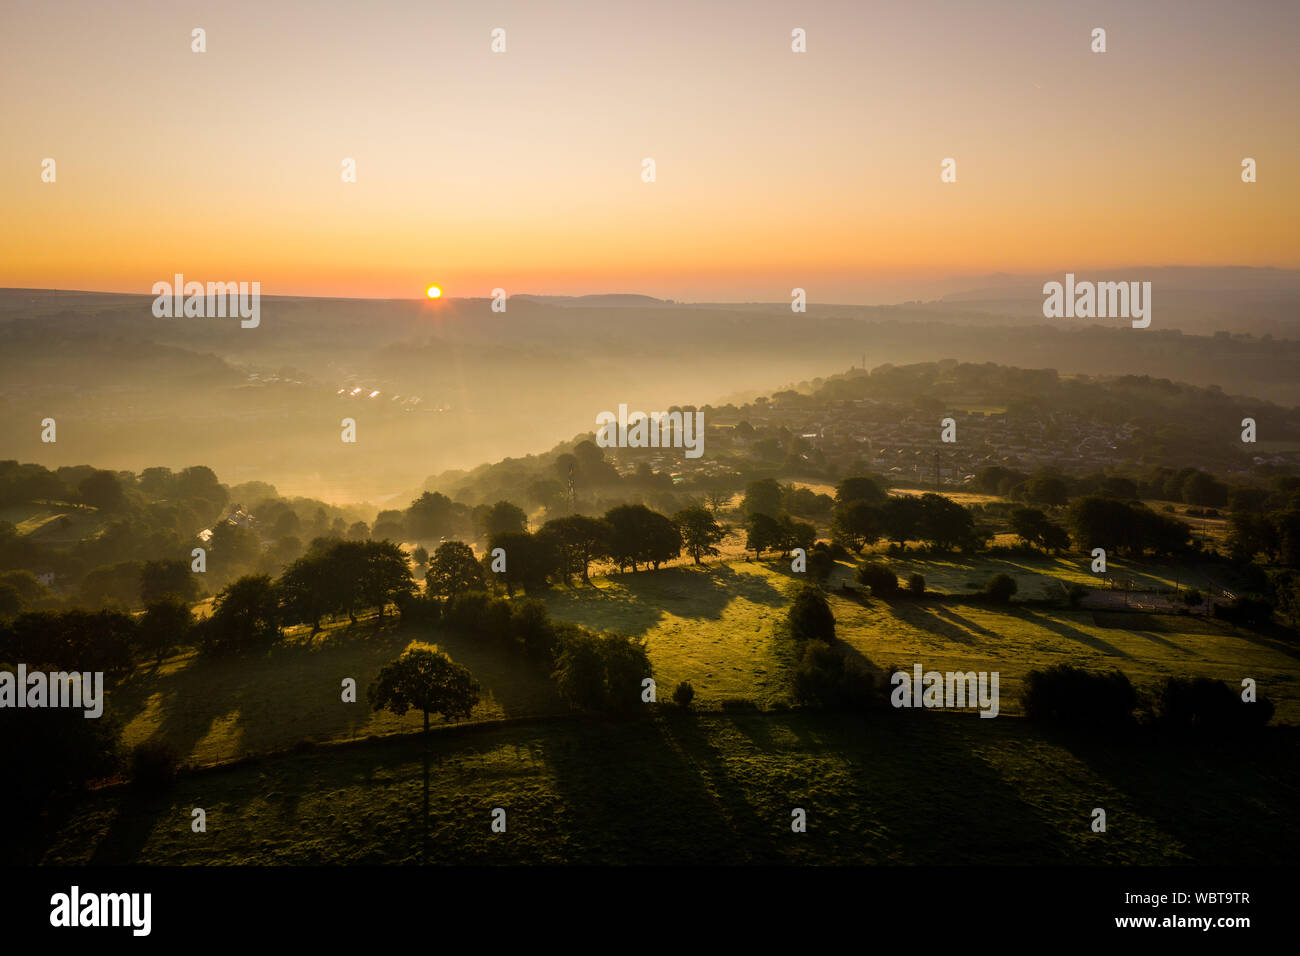 Vue aérienne de l'aube sur un paysage rural landscape with Morning Mist Banque D'Images